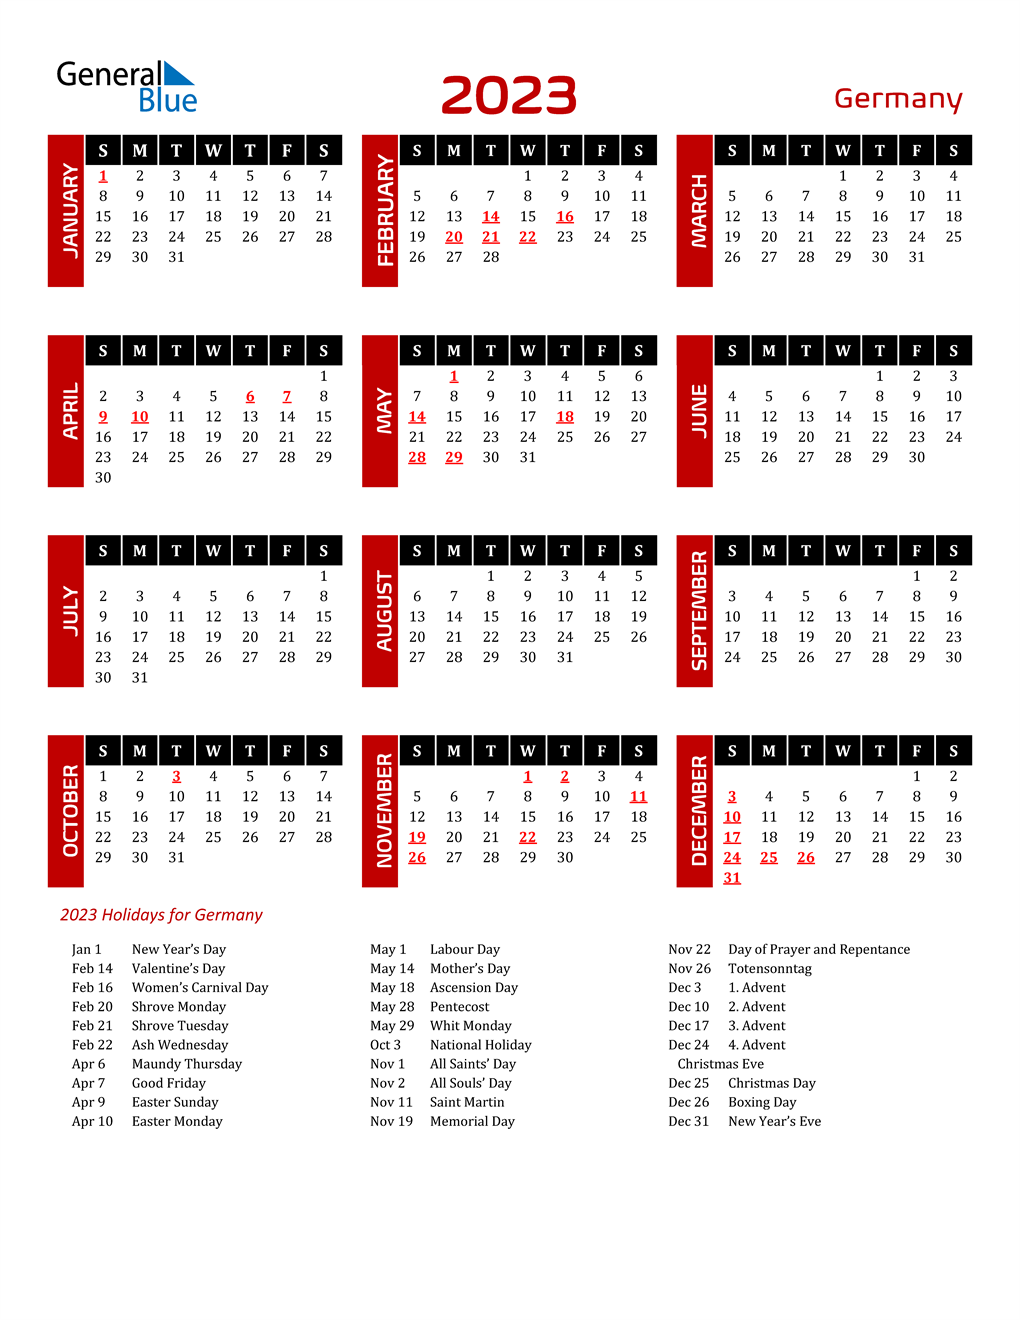 printable-2023-holiday-calendar-printable-world-holiday